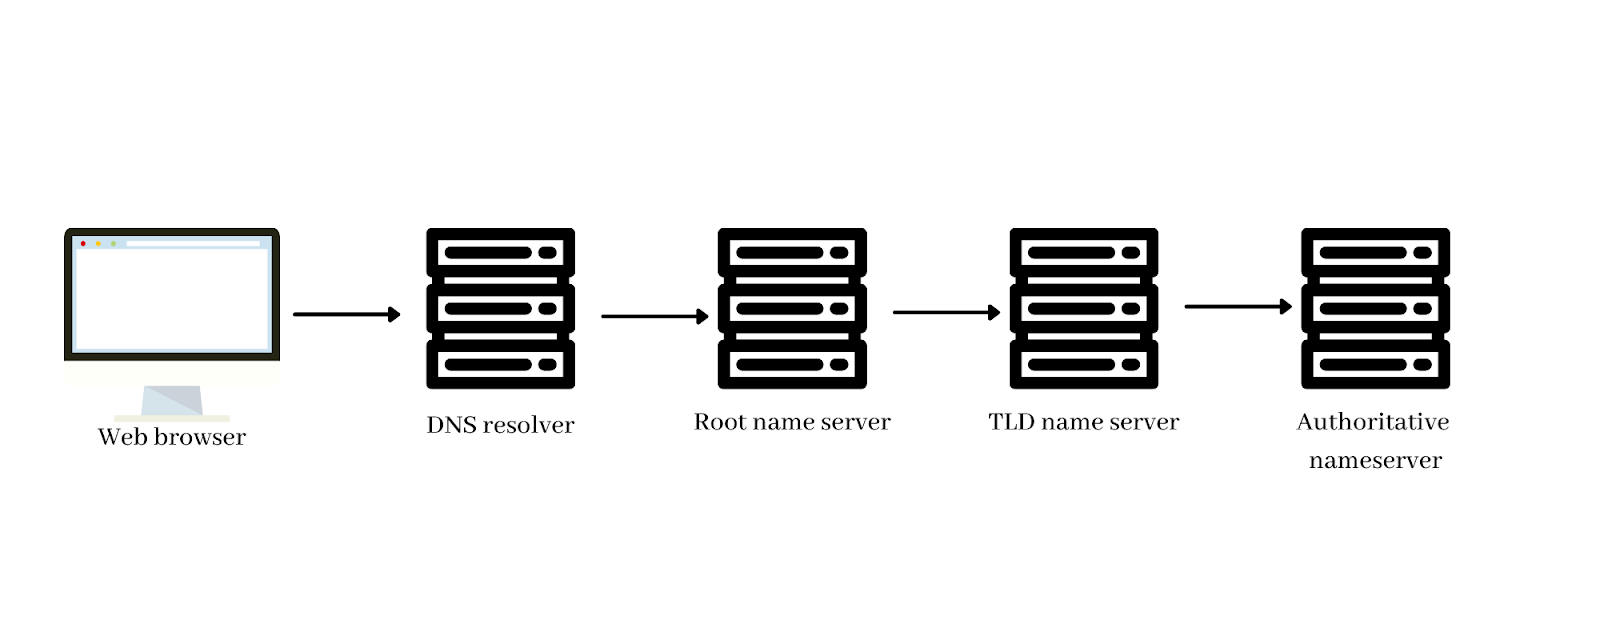 authoritative dns server in dns query